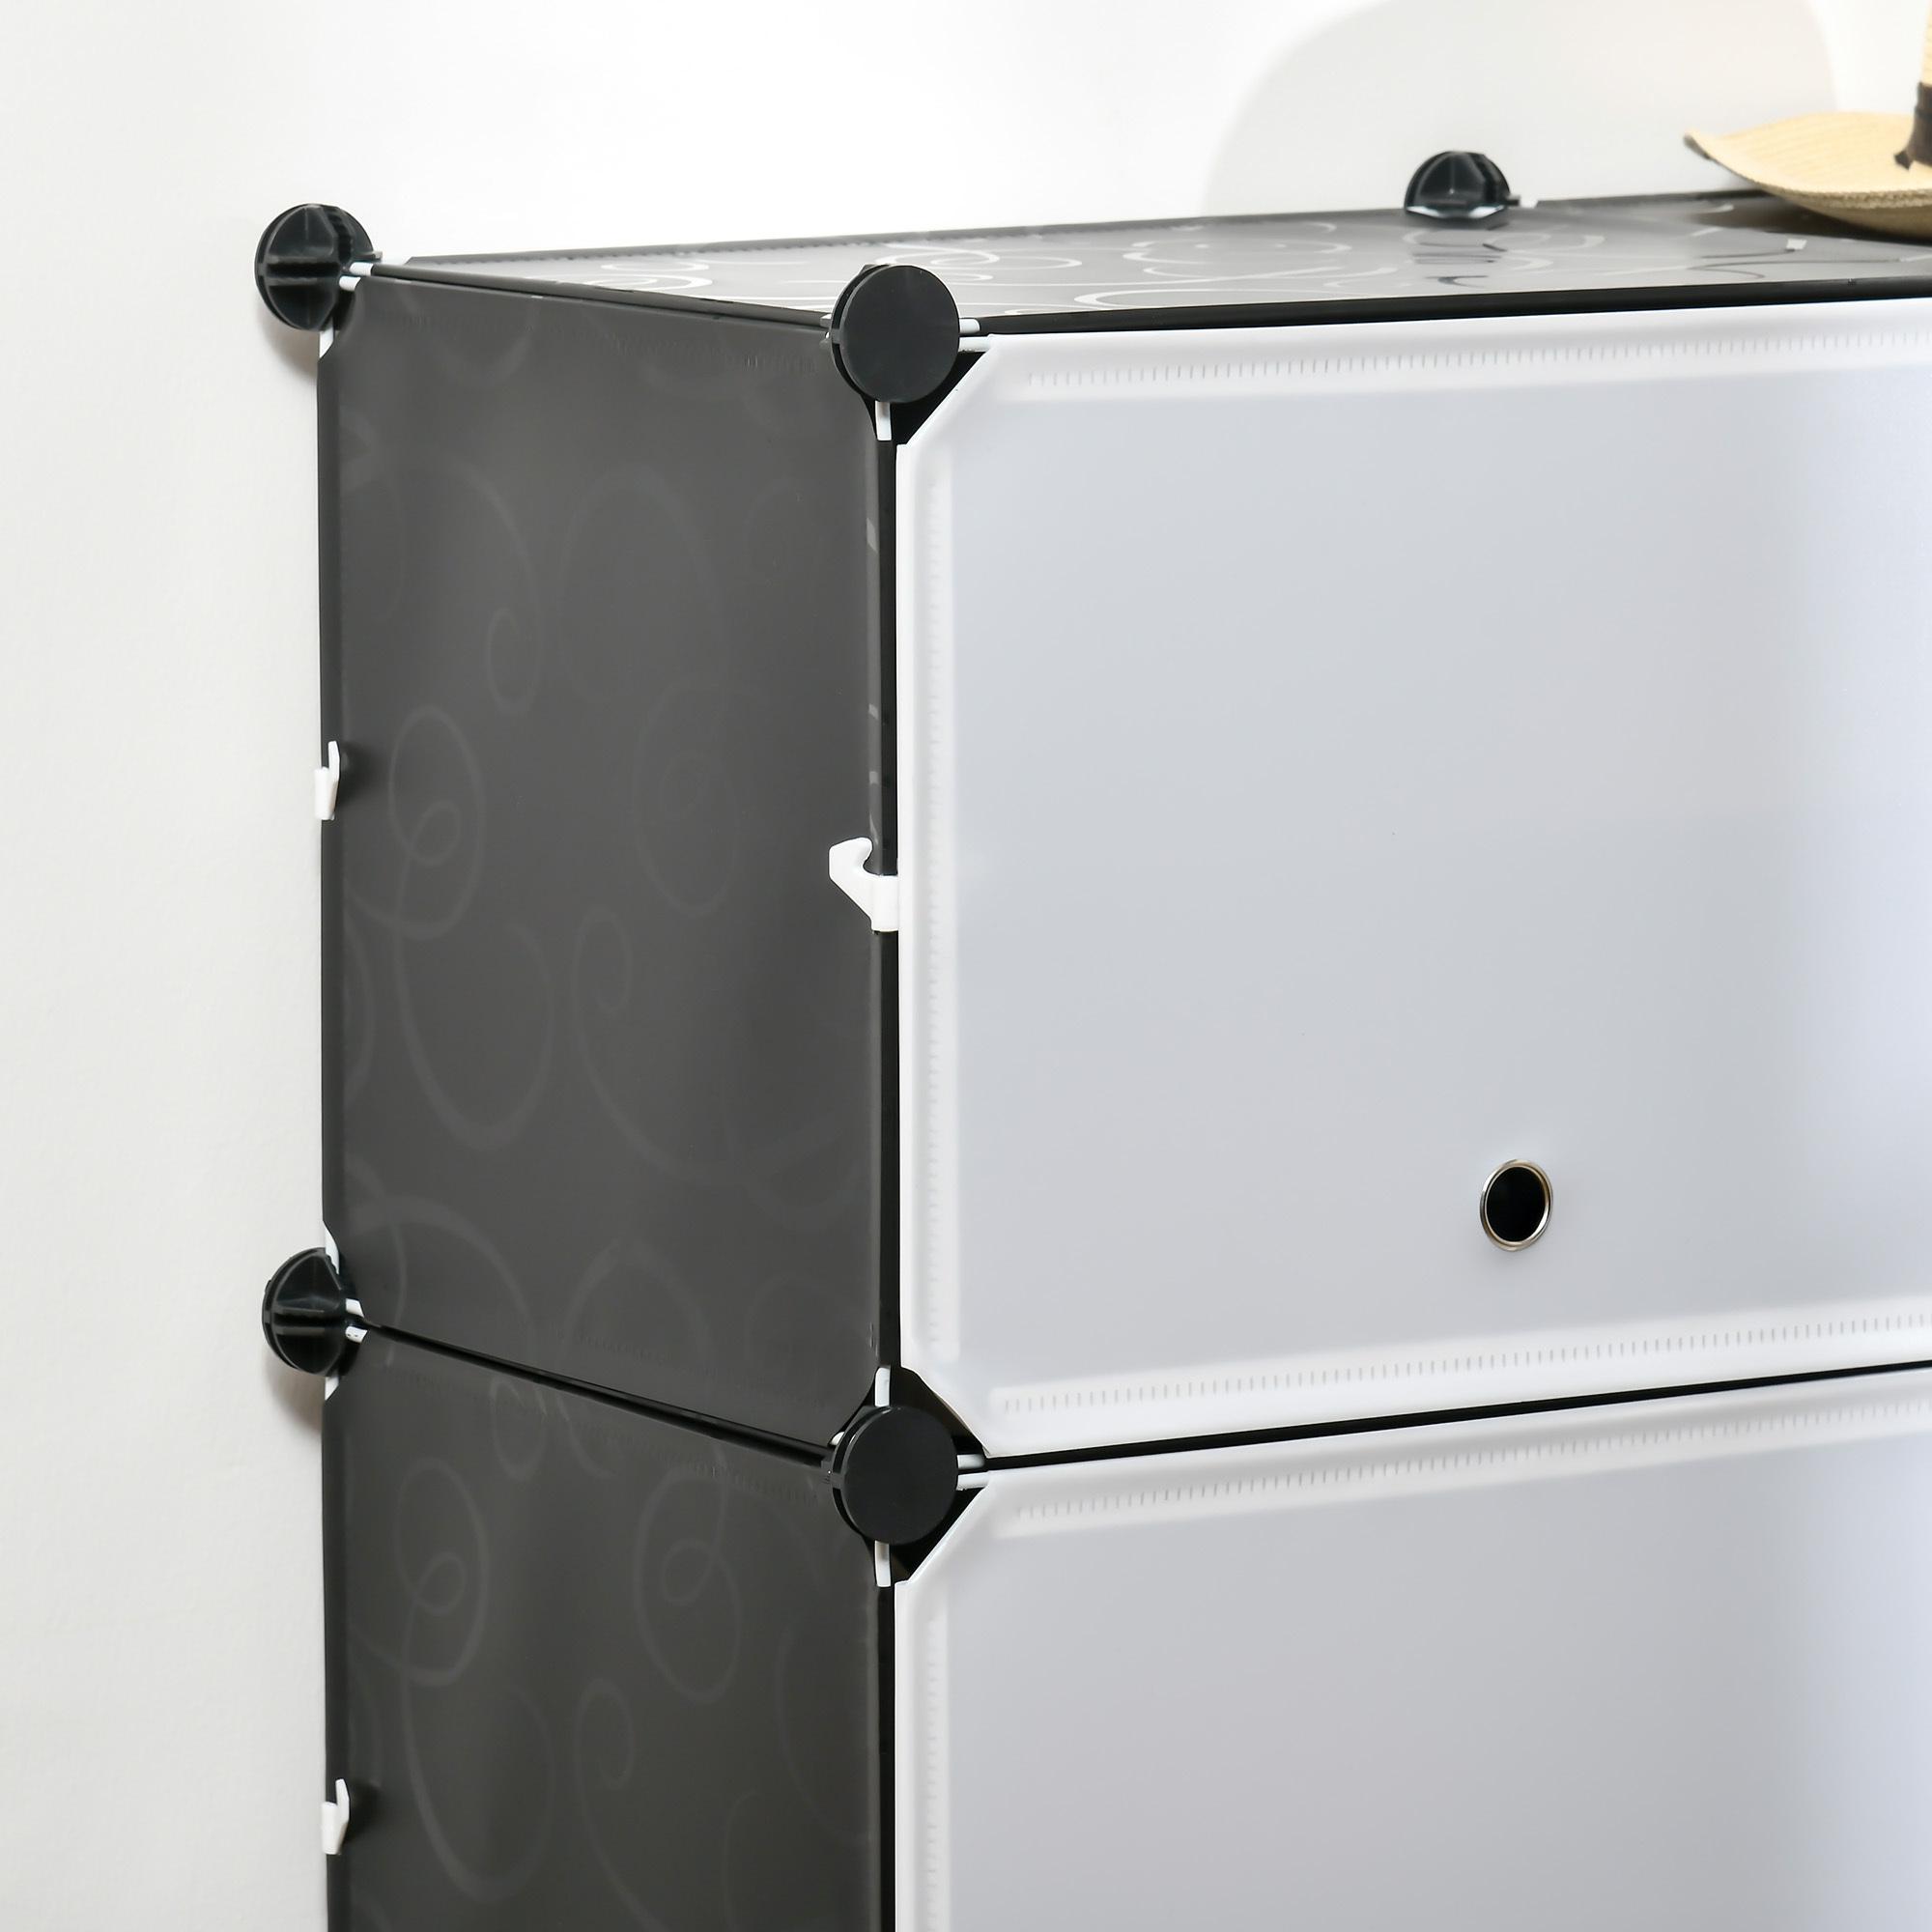 Meuble de rangement - meuble à chaussures modulable 12 casiers avec portes et étagères - dim. 125L x 32l x 125H cm - PP noir blanc